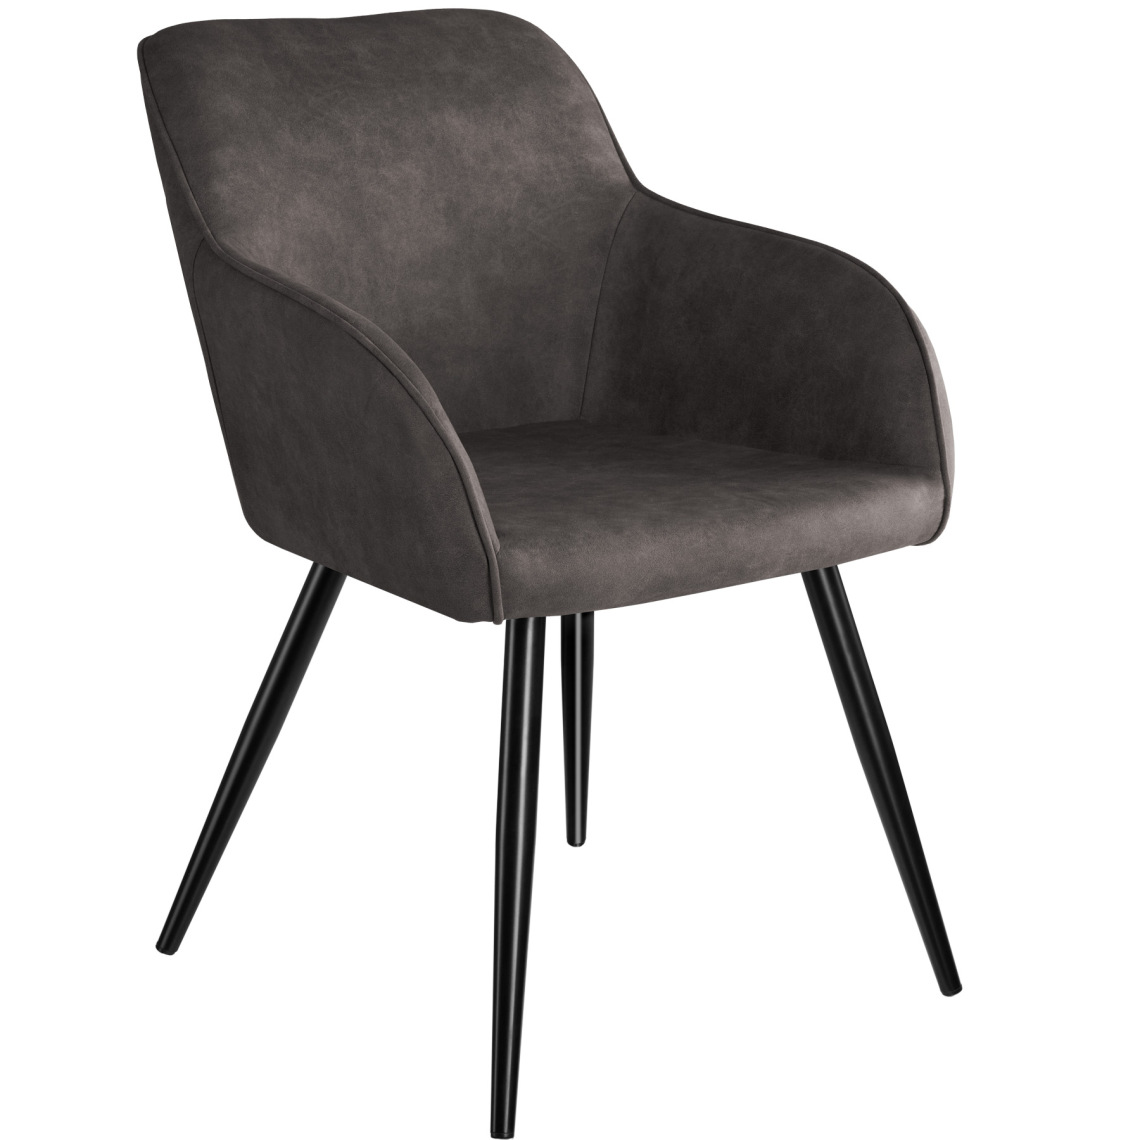 Tectake - Chaise Marilyn tissu - gris foncé-noir - Chaises